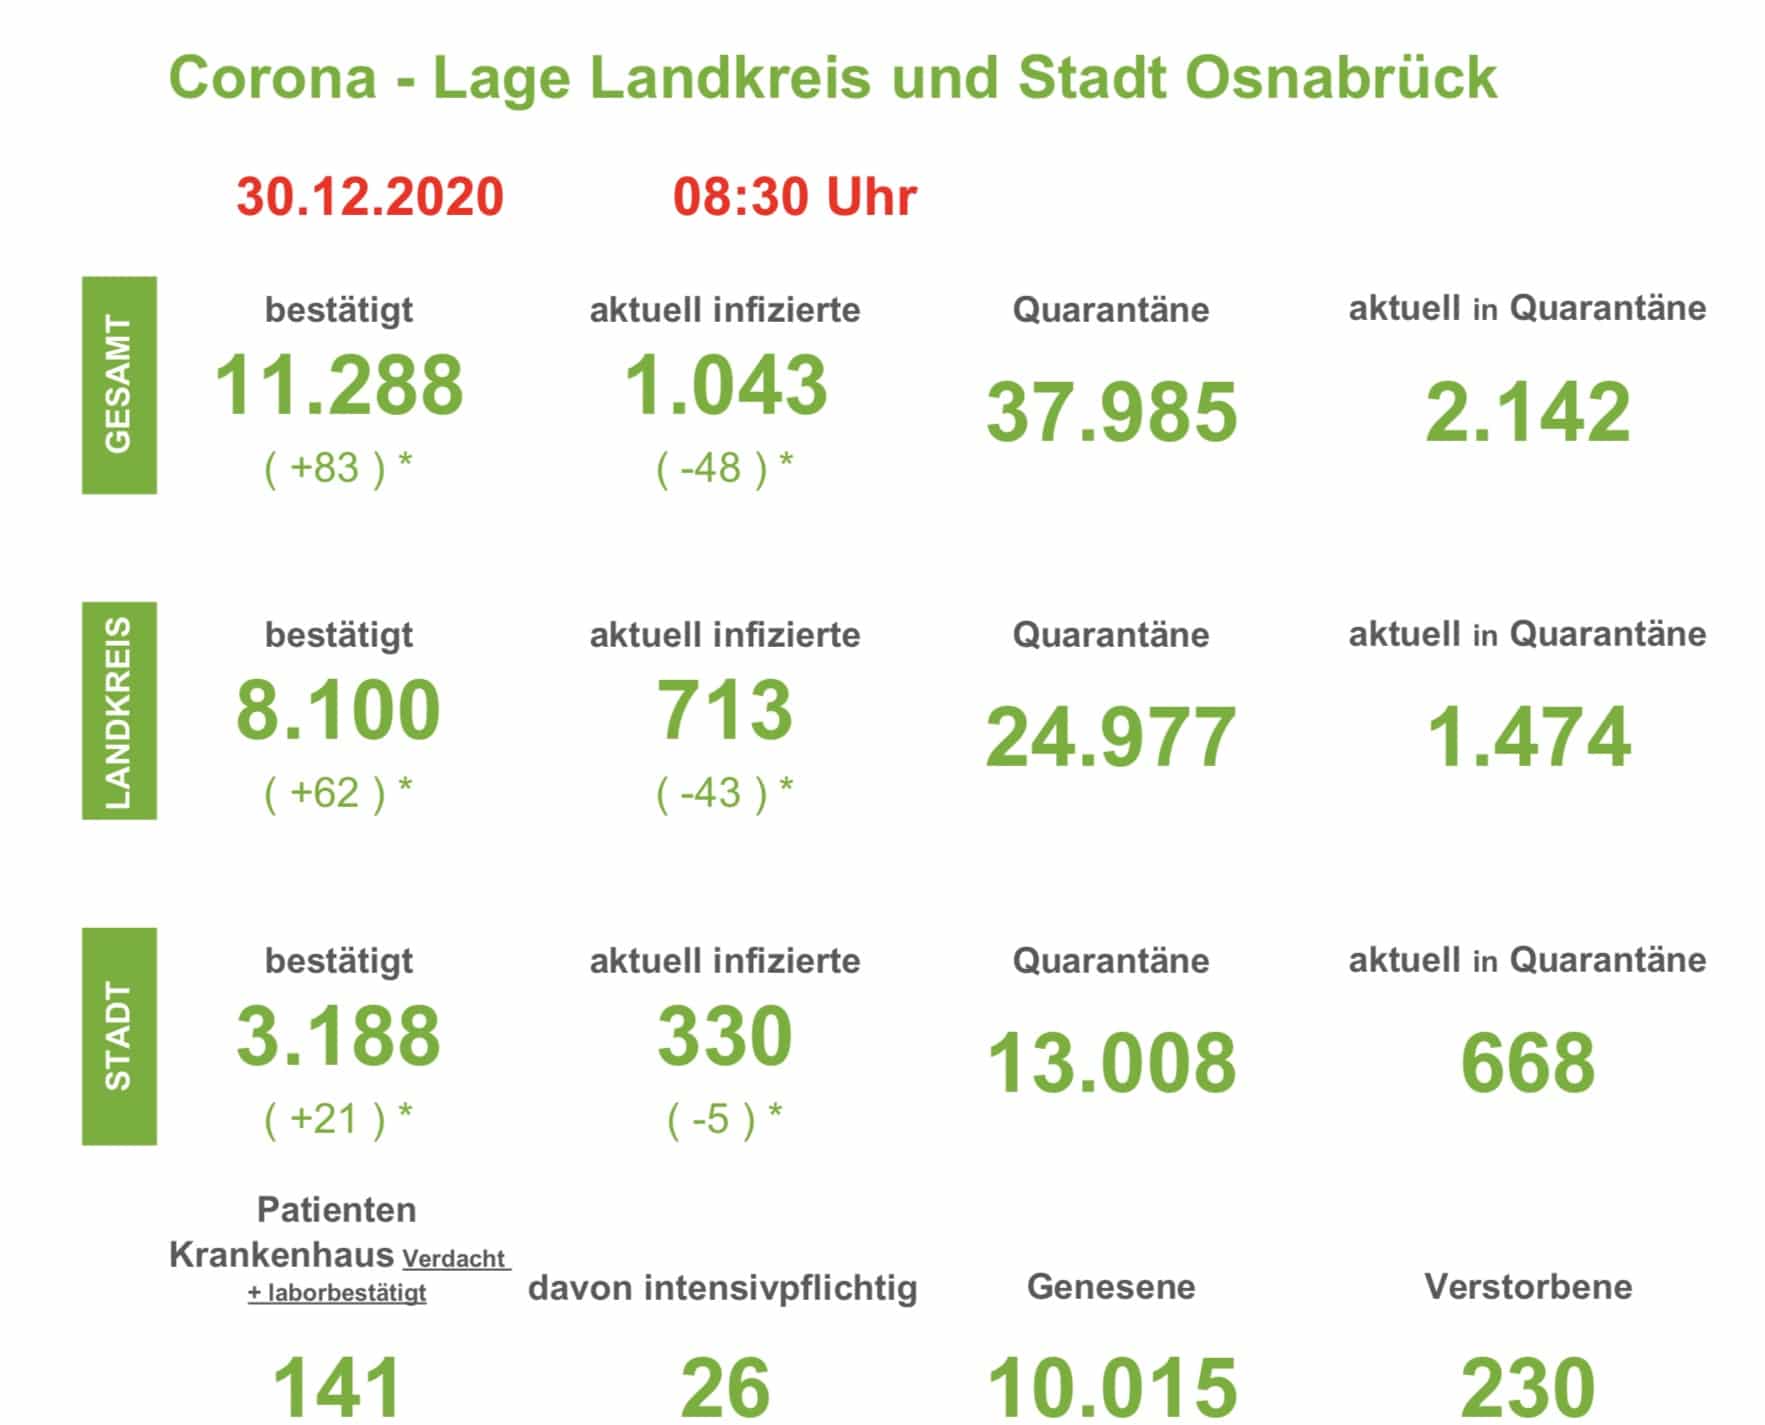 Zehn weitere Todesfälle im Zusammenhang mit einer Corona-Infektion in der Region Osnabrück